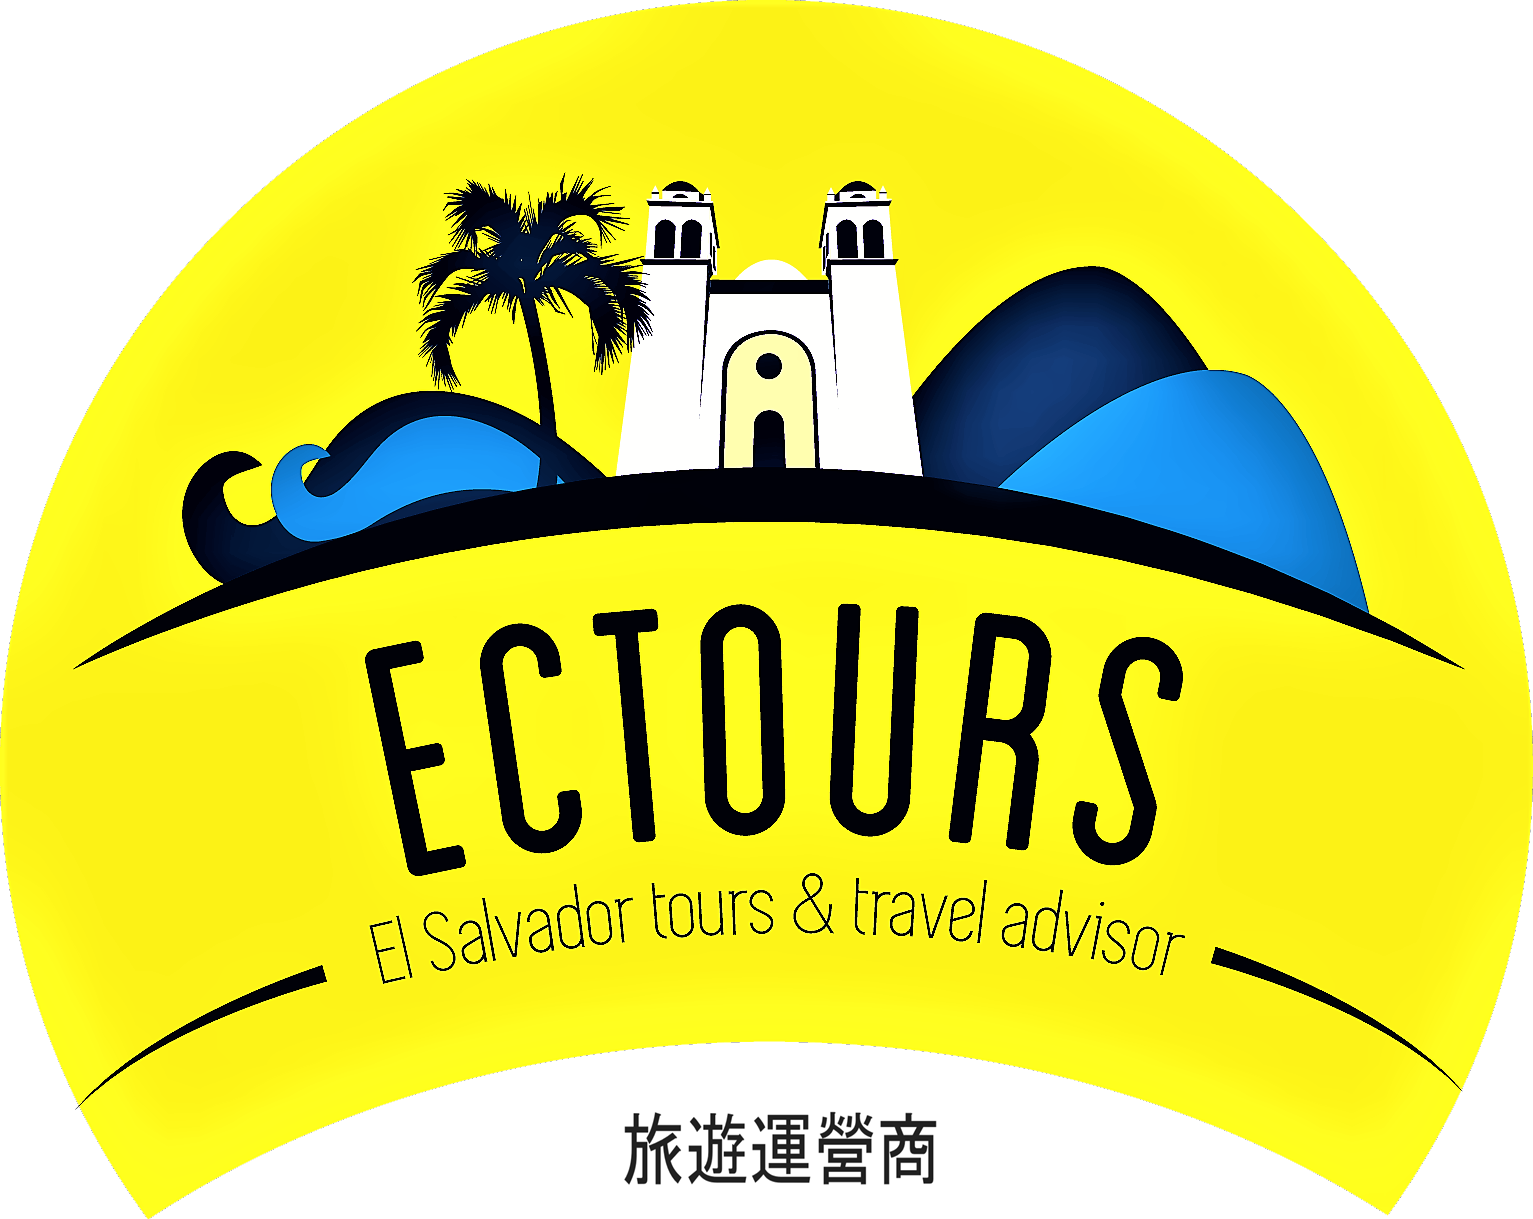 EC Tours